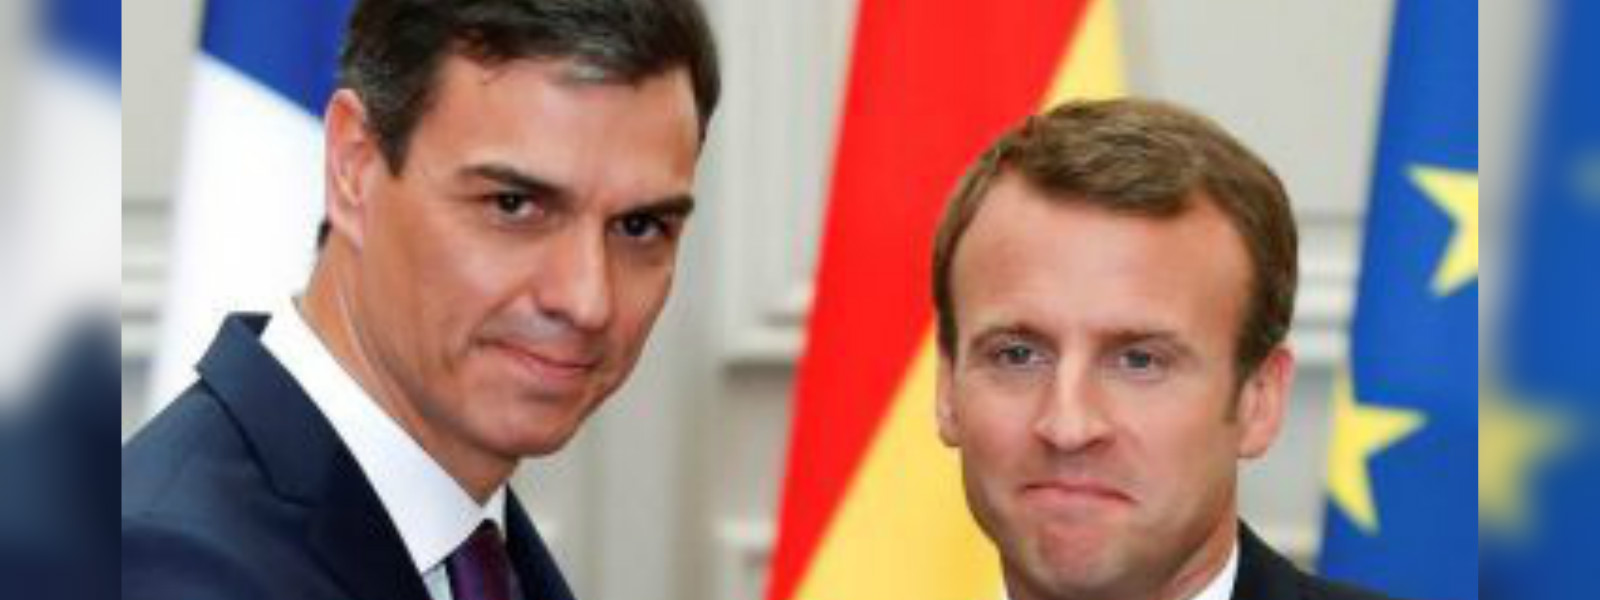 Macron welcomes Sanchez at Elysee palace